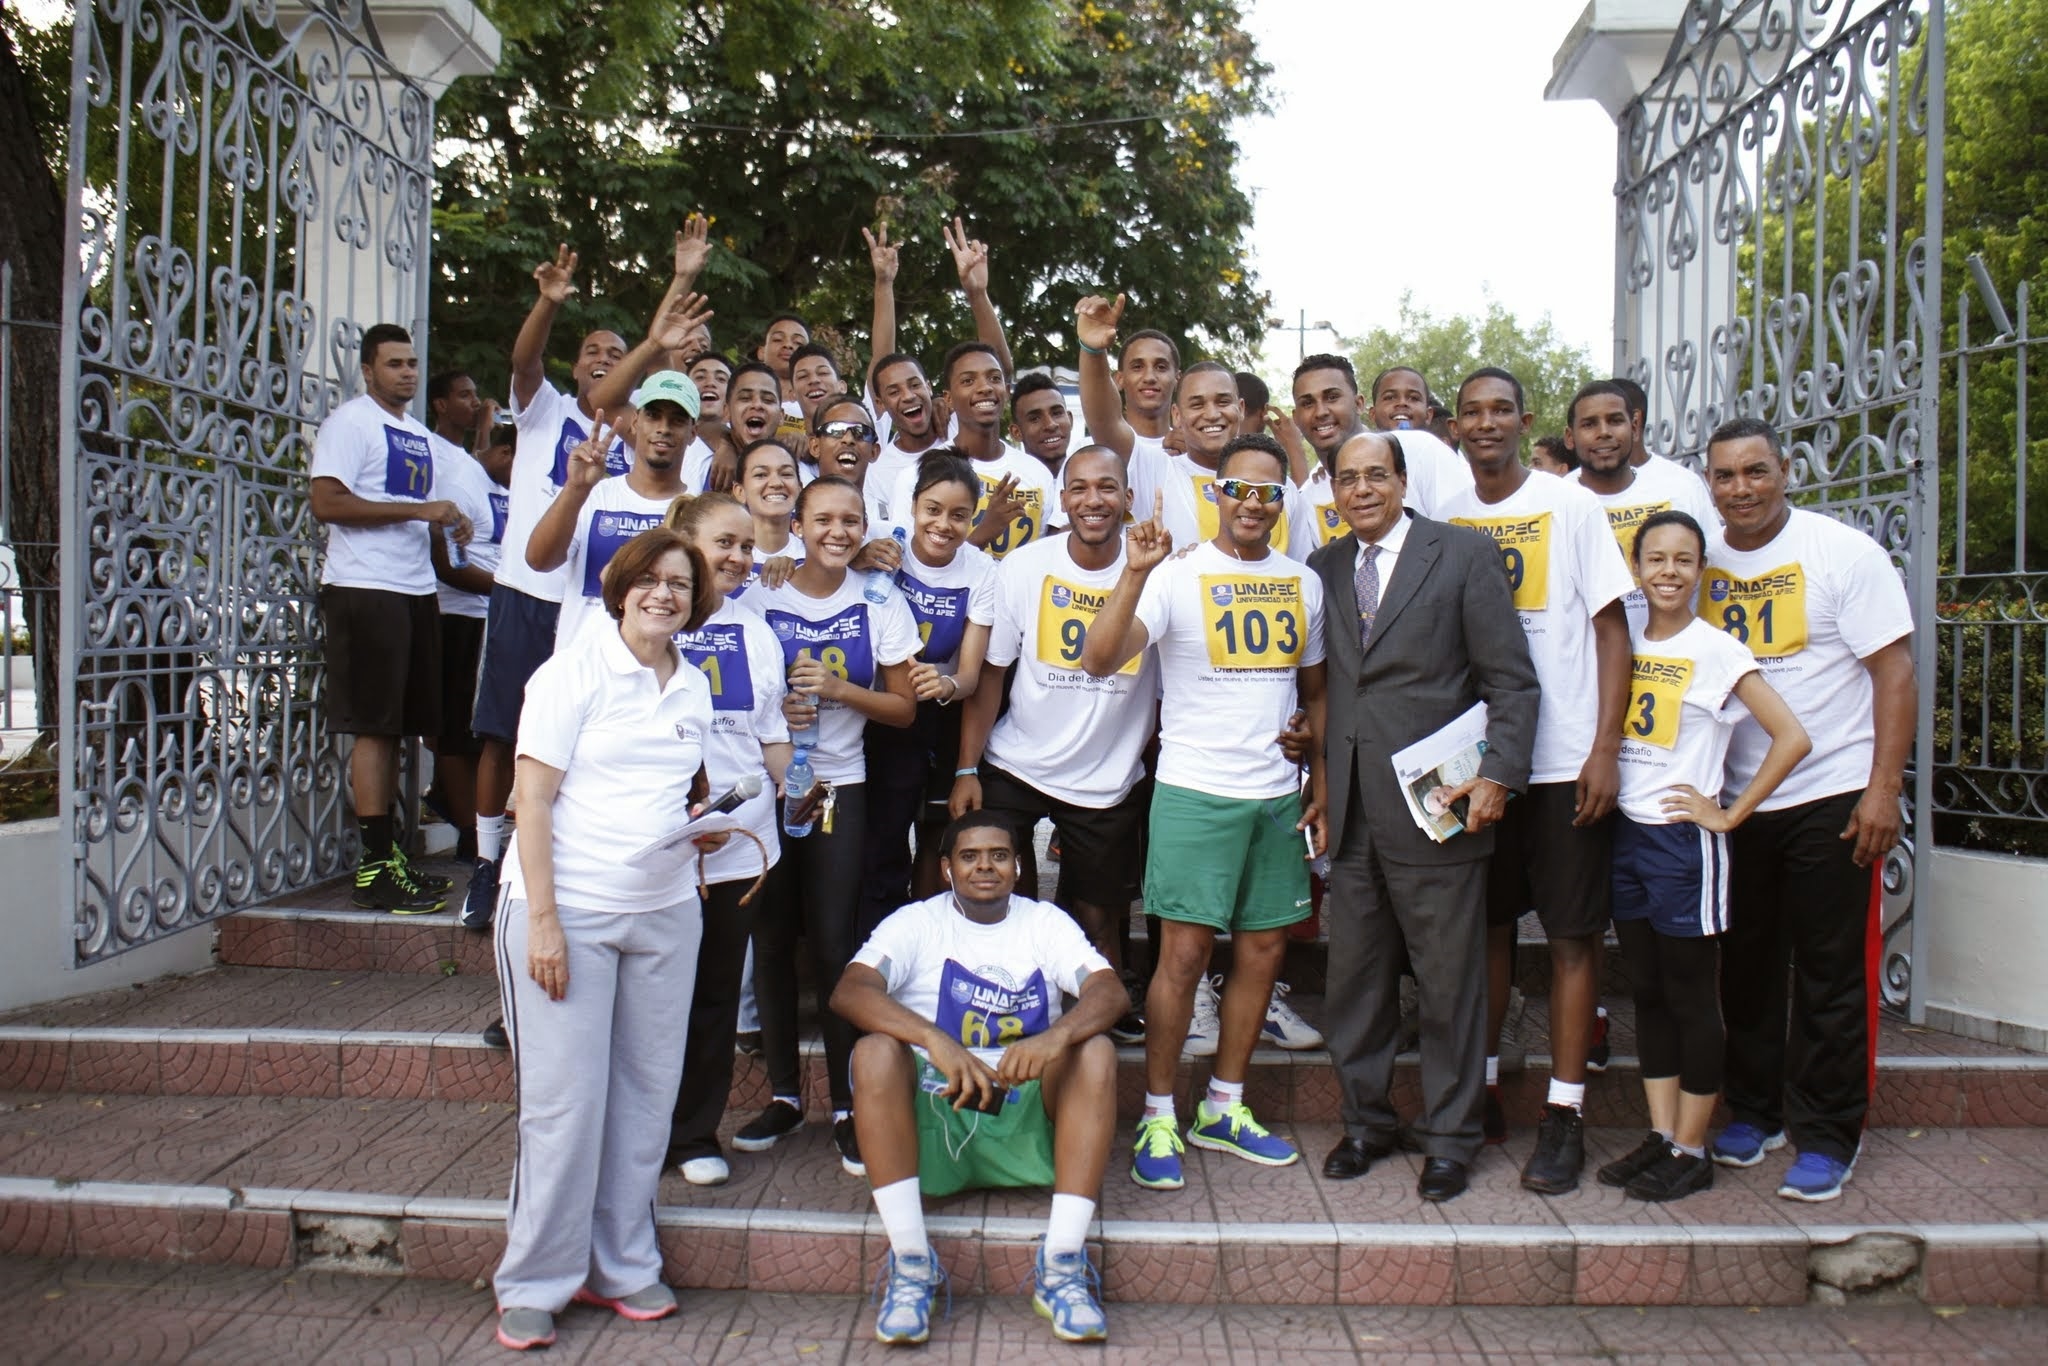 Con la participación de alrededor de 100 personas entre, estudiantes, empleados y visitantes, se celebró en LA Universidad APEC- UNAPEC- el Maratón-Caminata por el “Dia Mundial del Desafío”.